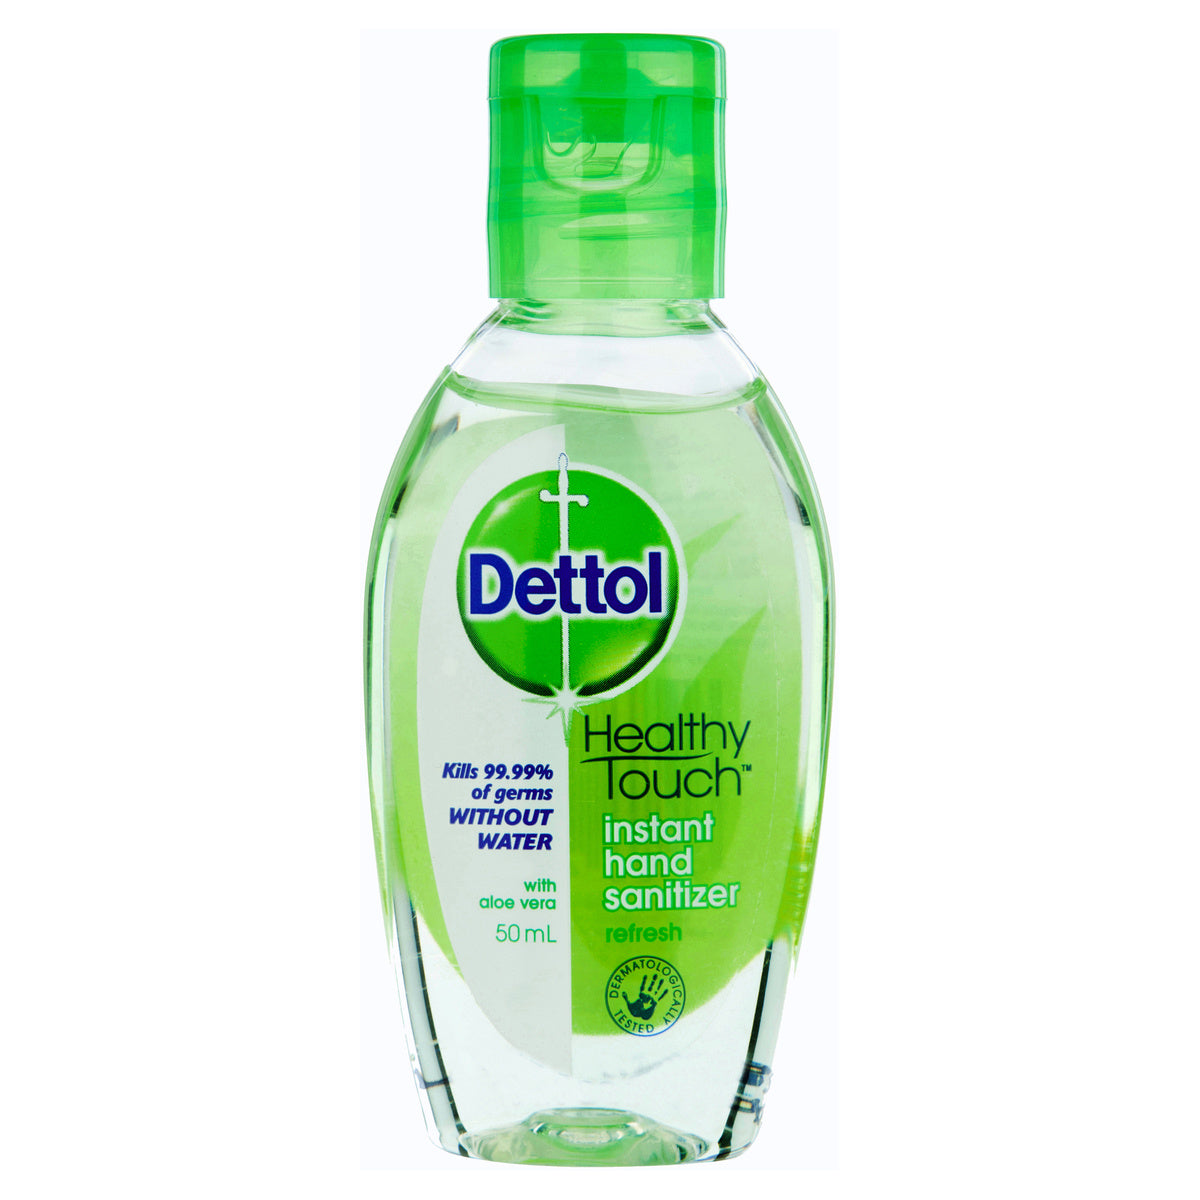 Dettol Instant Hand Sanitiser Refresh 50 毫升